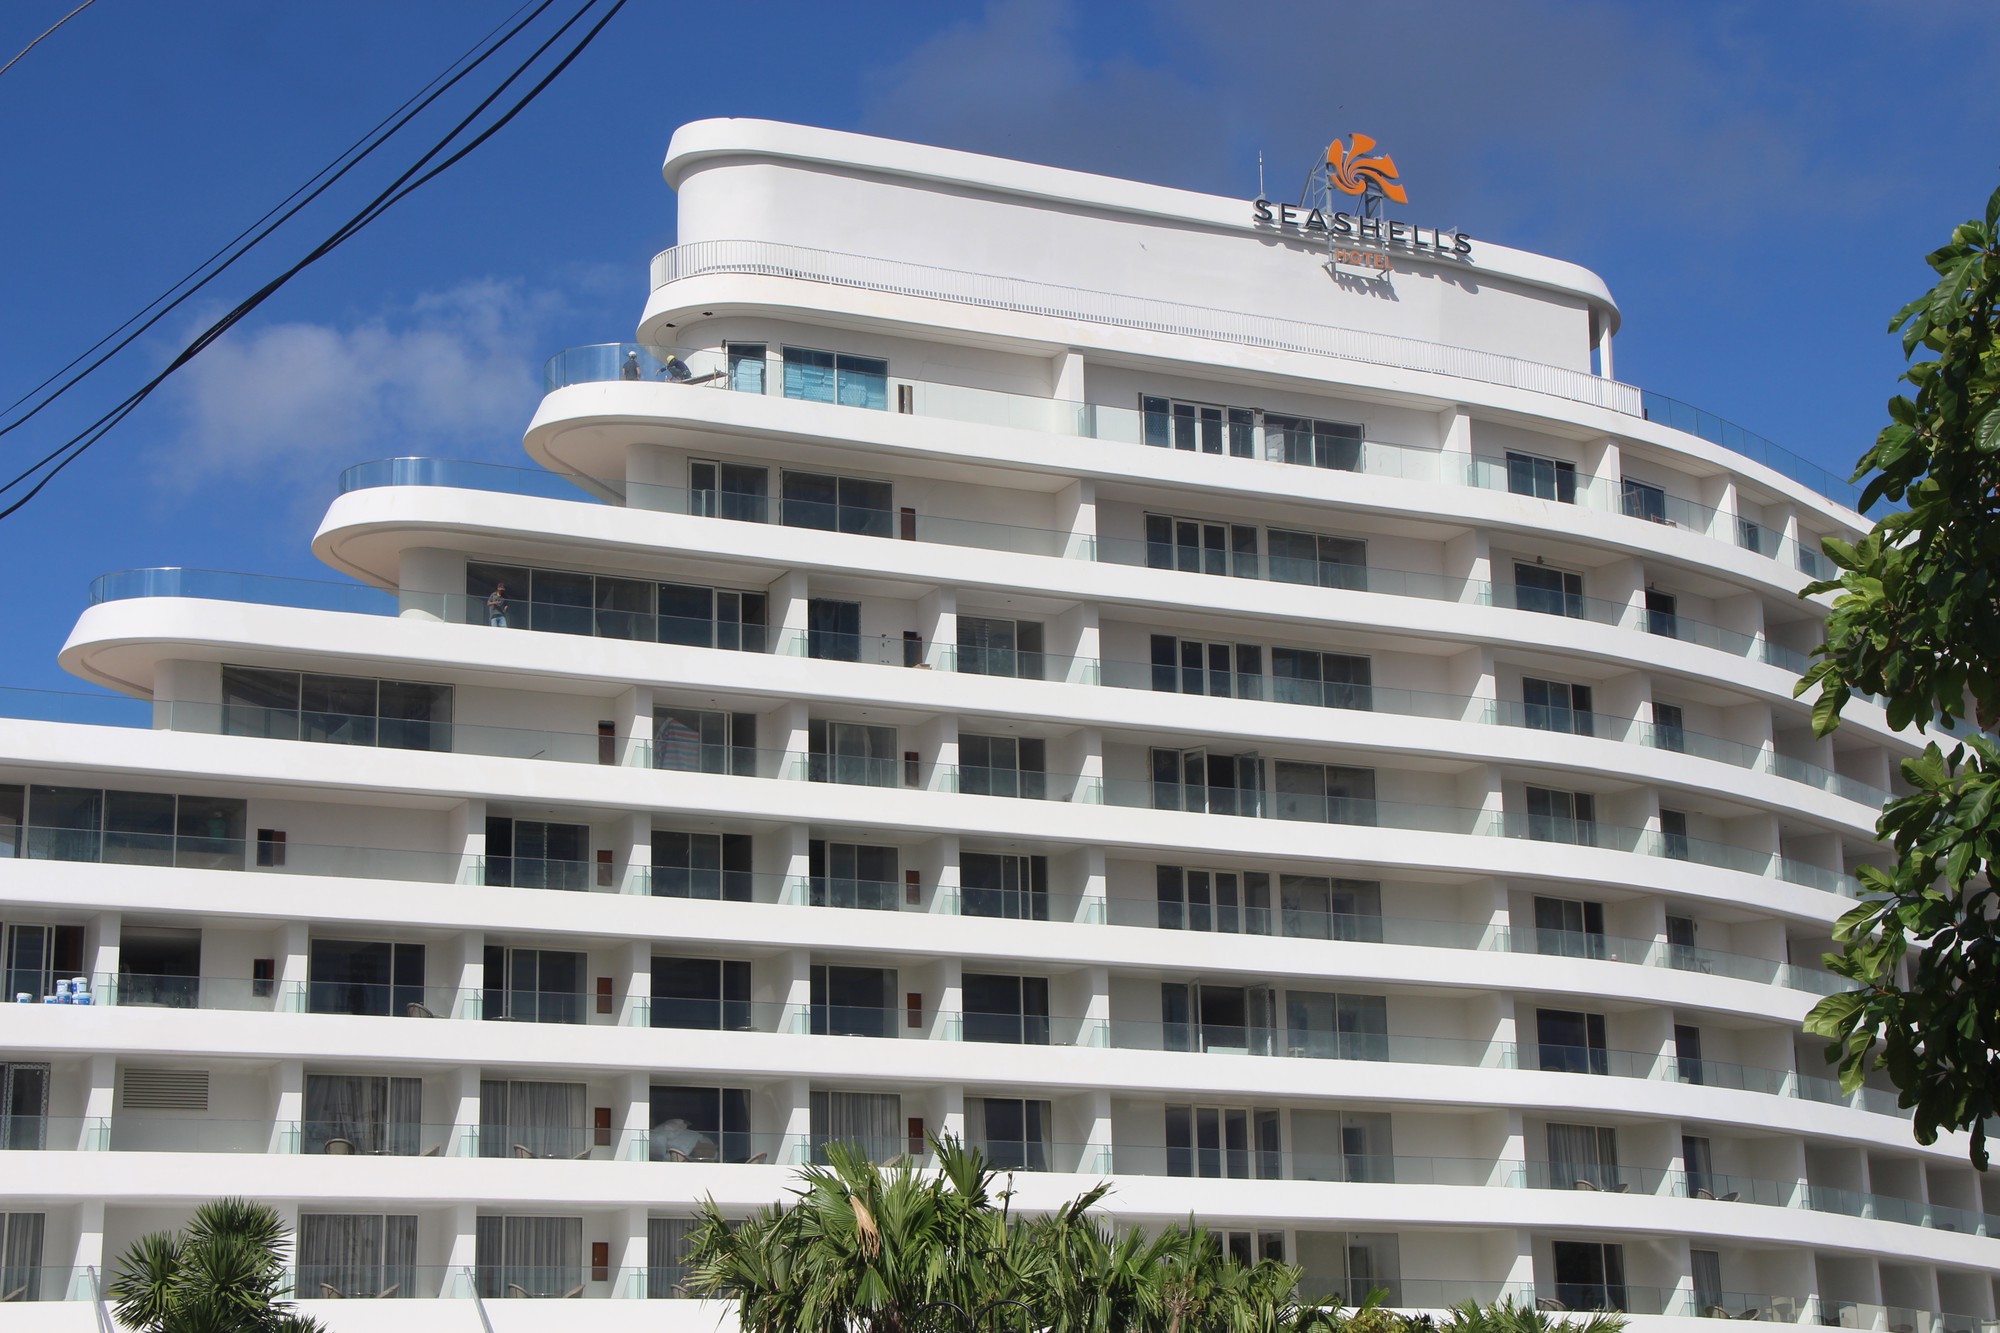 VIDEO: Đang đo đạc để “cắt ngọn” khách sạn 5 sao ở Phú Quốc - Ảnh 3.